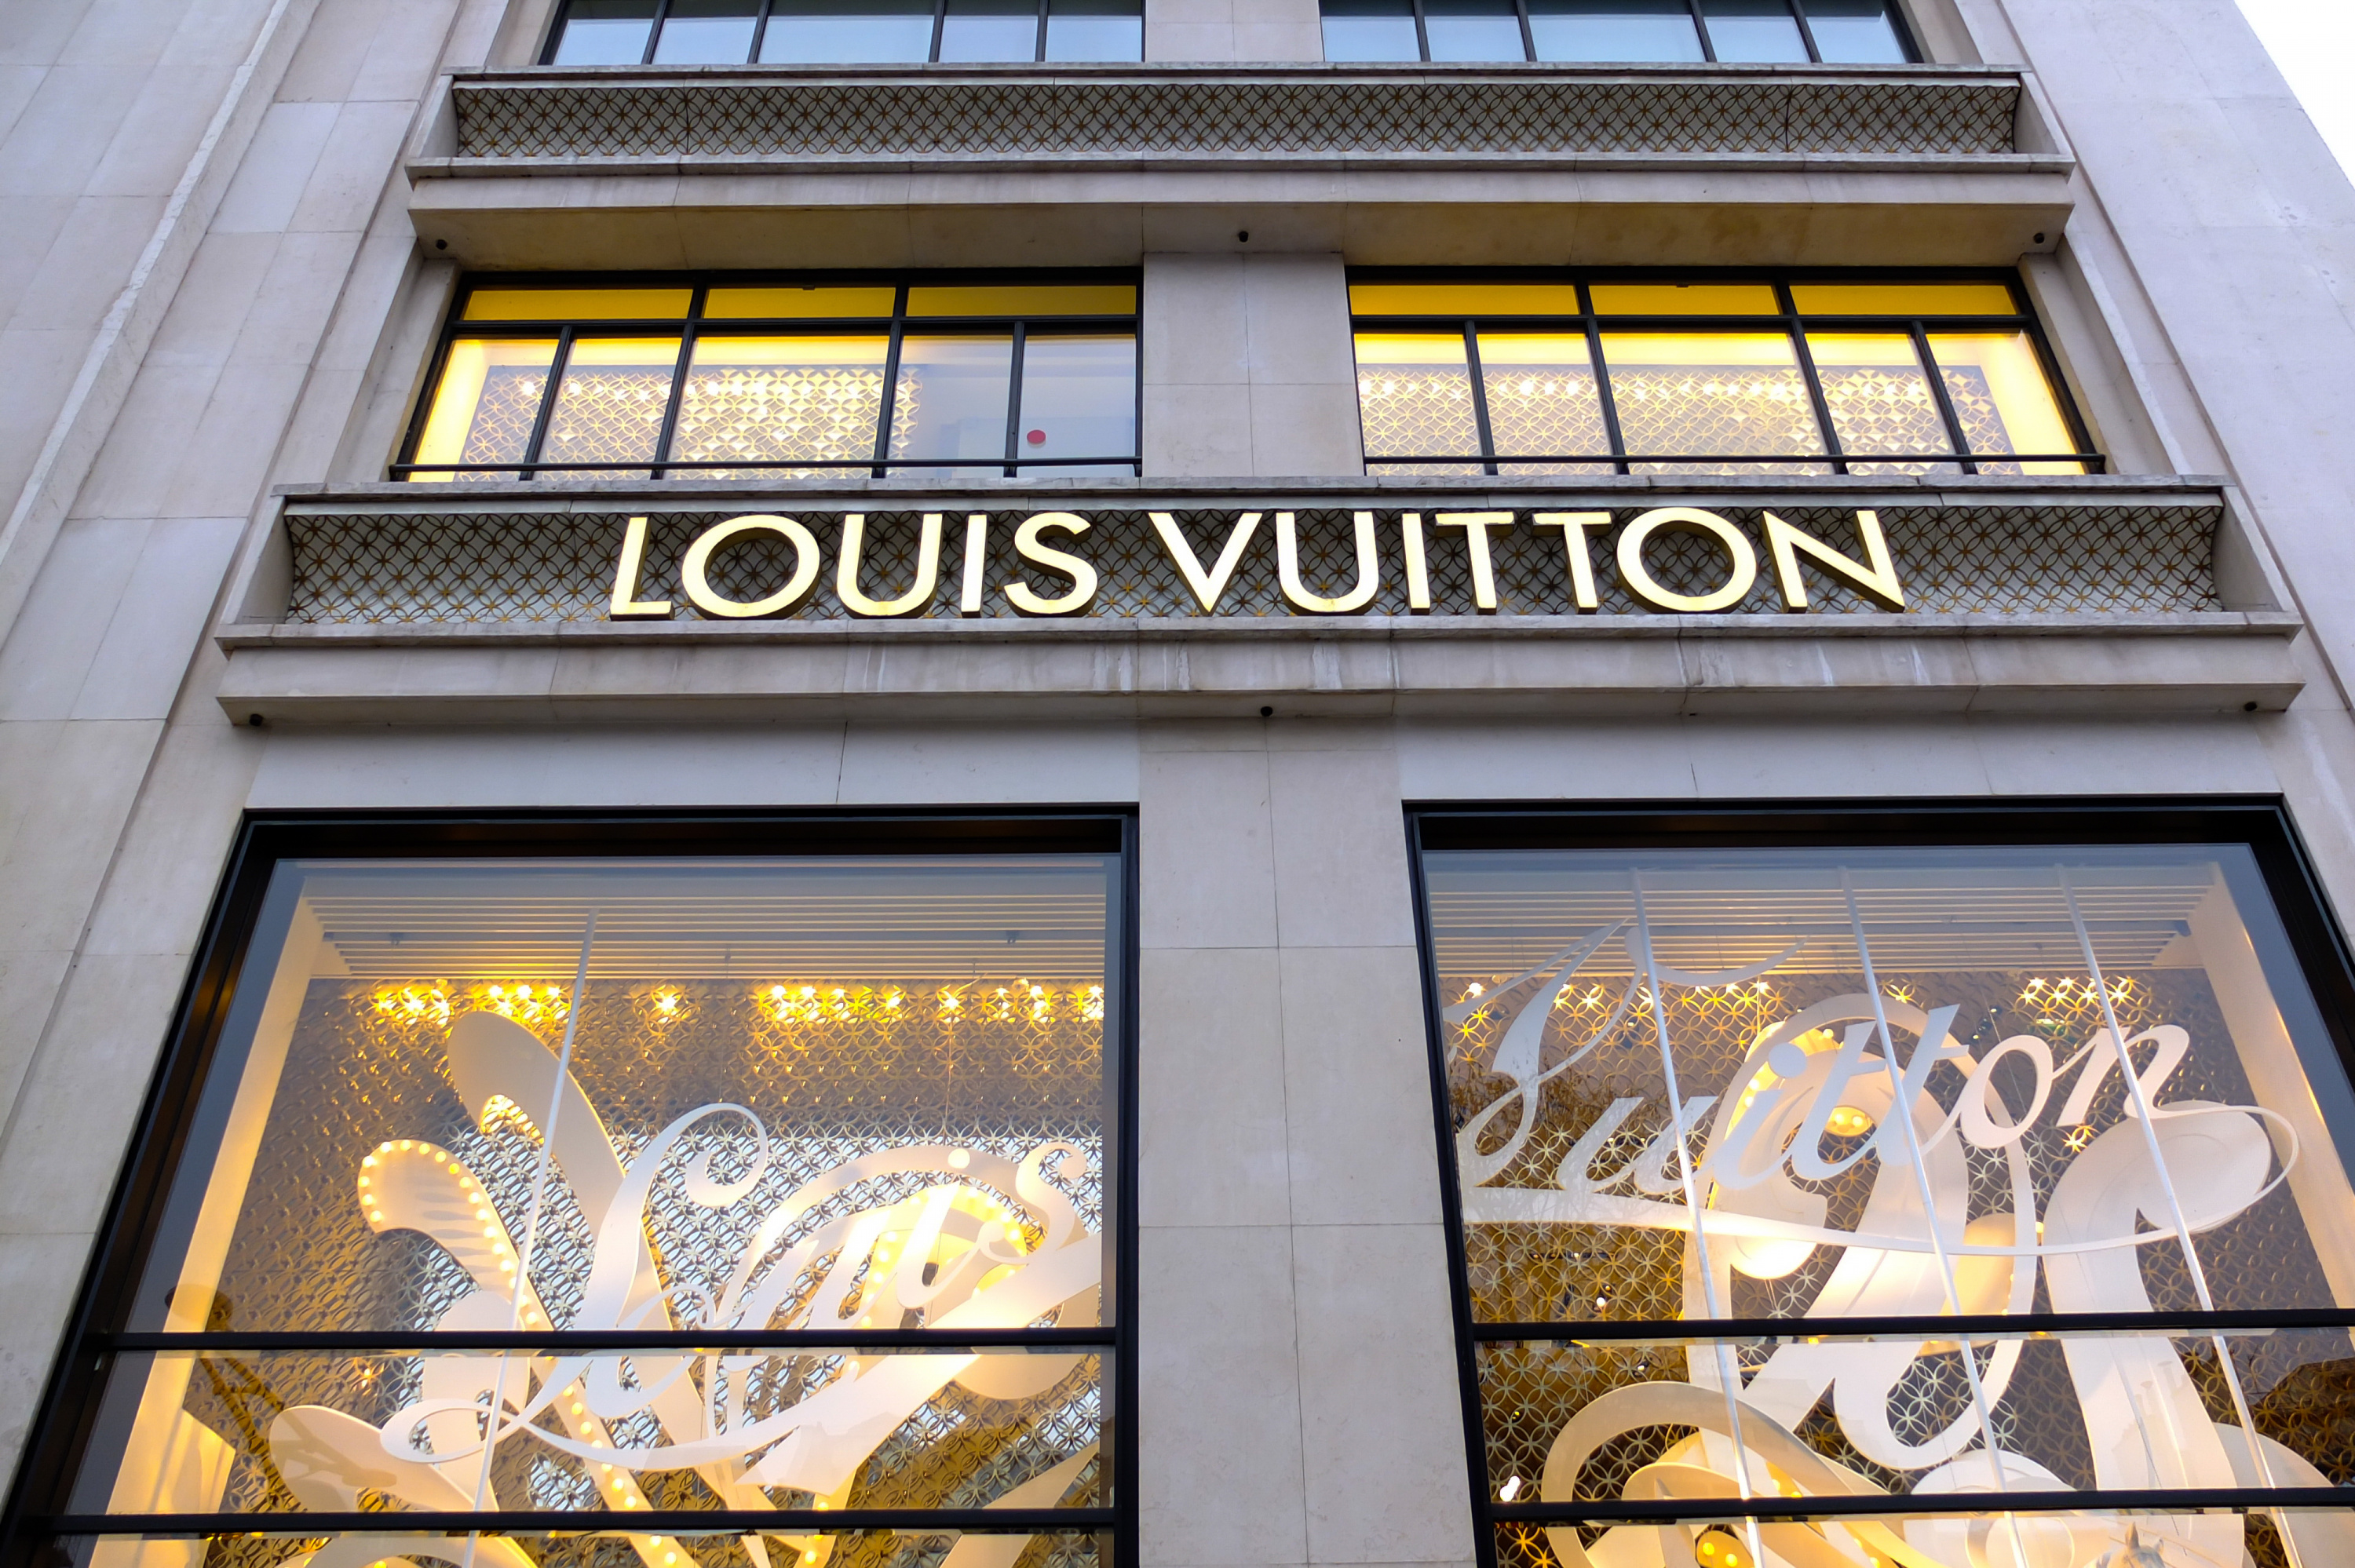 Louis Vuitton, mrmichaelangelo/shutterstock.com